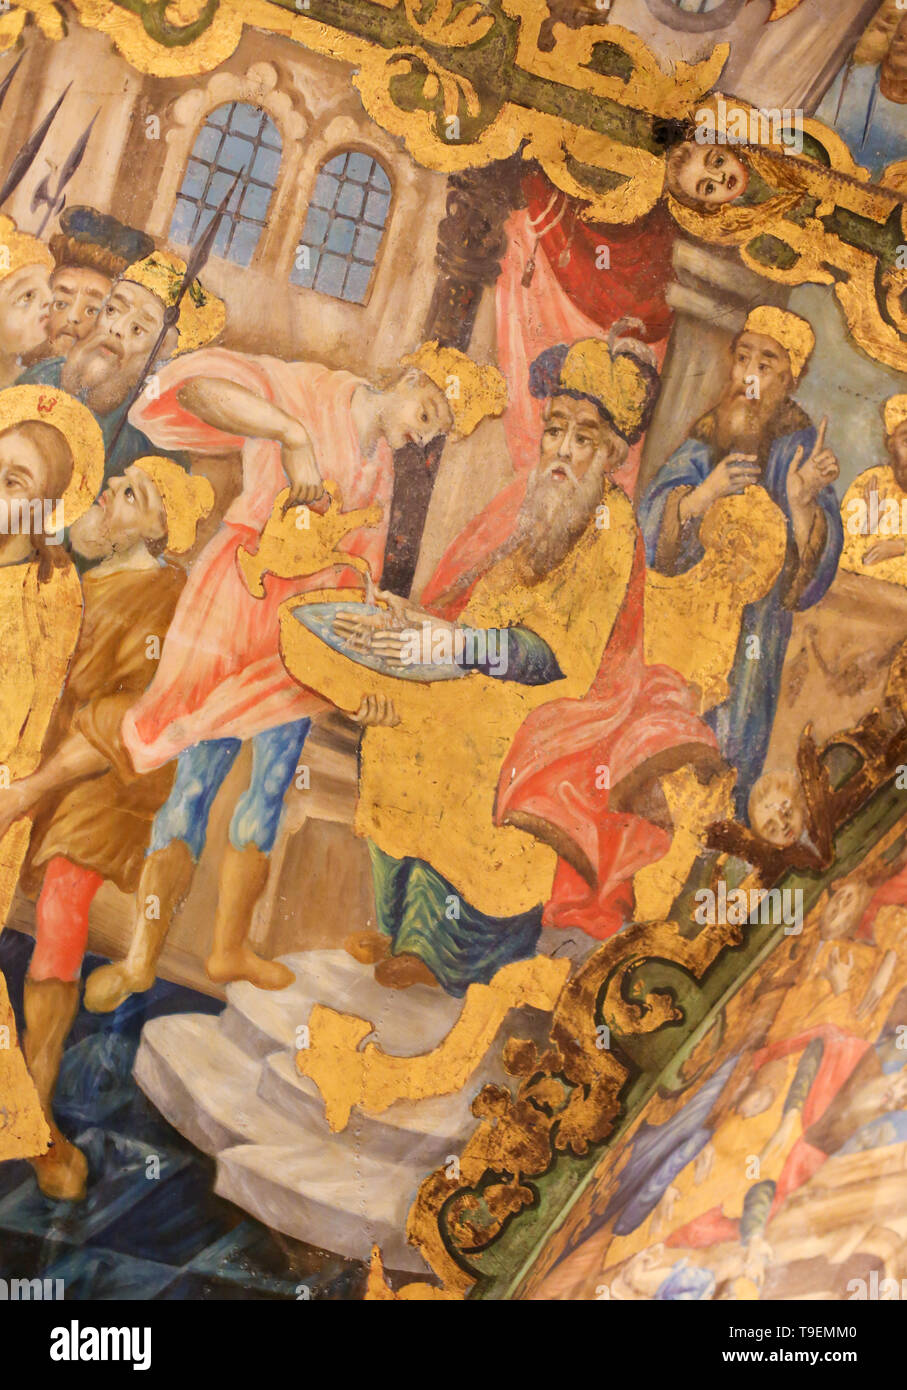 Fresque grecque orthodoxe dans l'église du Saint Sépulcre à Jérusalem, représentant Jésus Christ devant Ponce Pilate, de laver ses mains. Banque D'Images